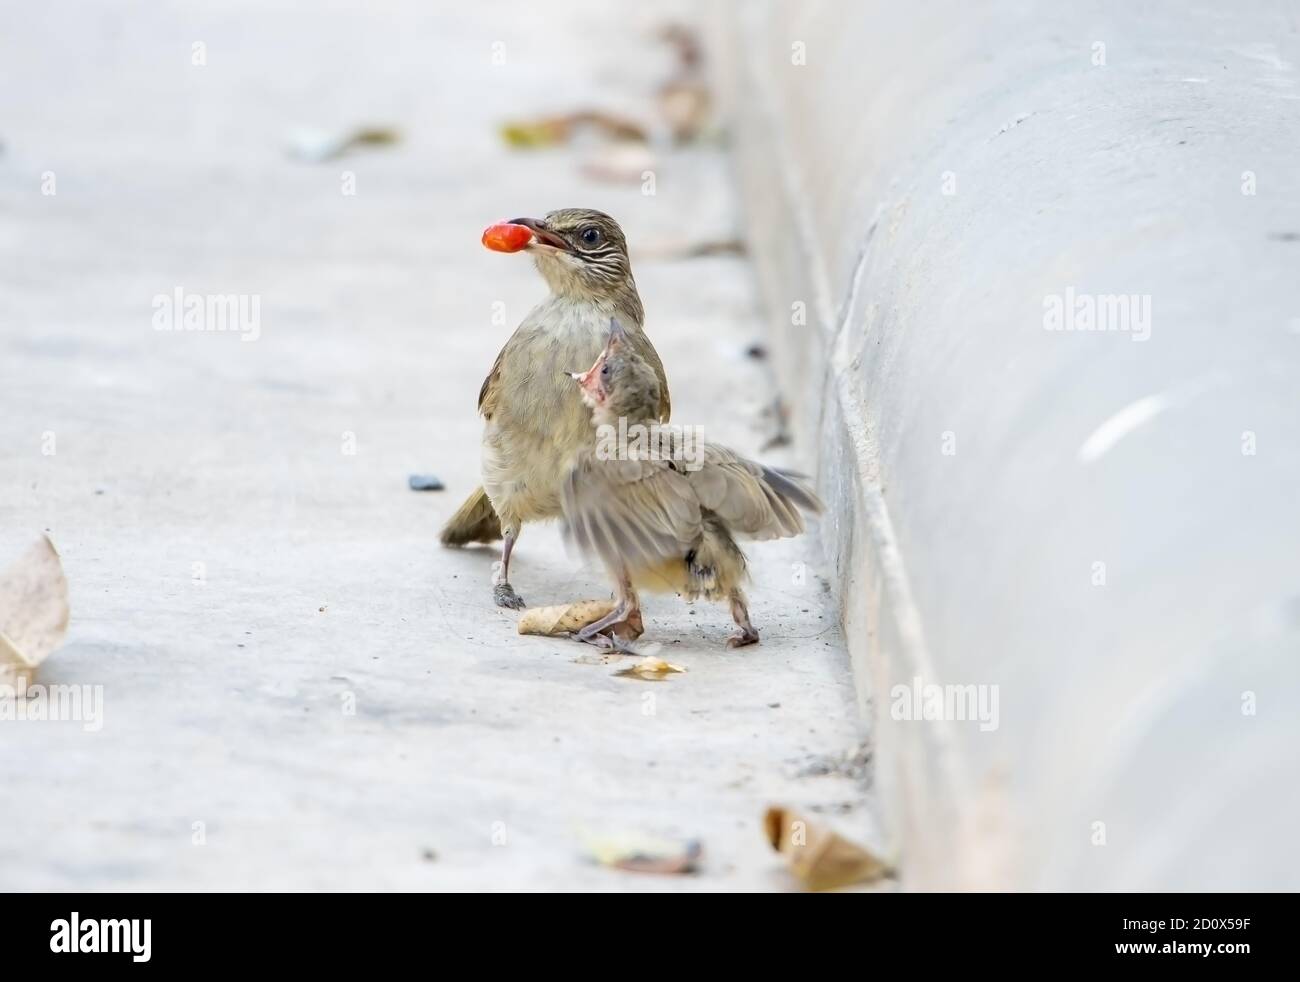 Los padres alimentan a un pequeño pájaro ciego en la calle. Cuidado con un pájaro recién nacido que cayó de un nido en un árbol. Foto de stock